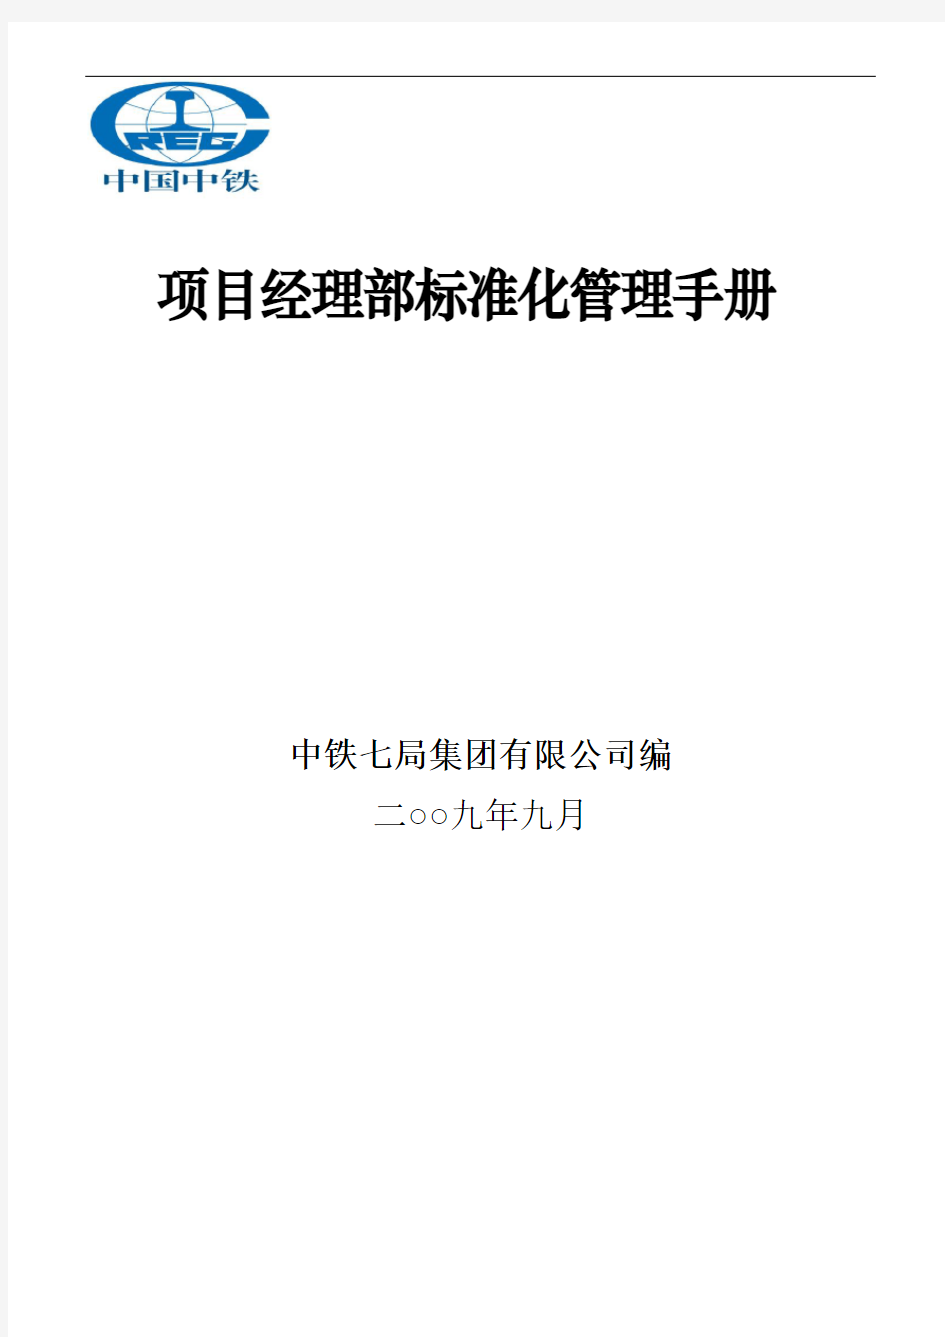 中铁七局项目经理部标准化管理手册